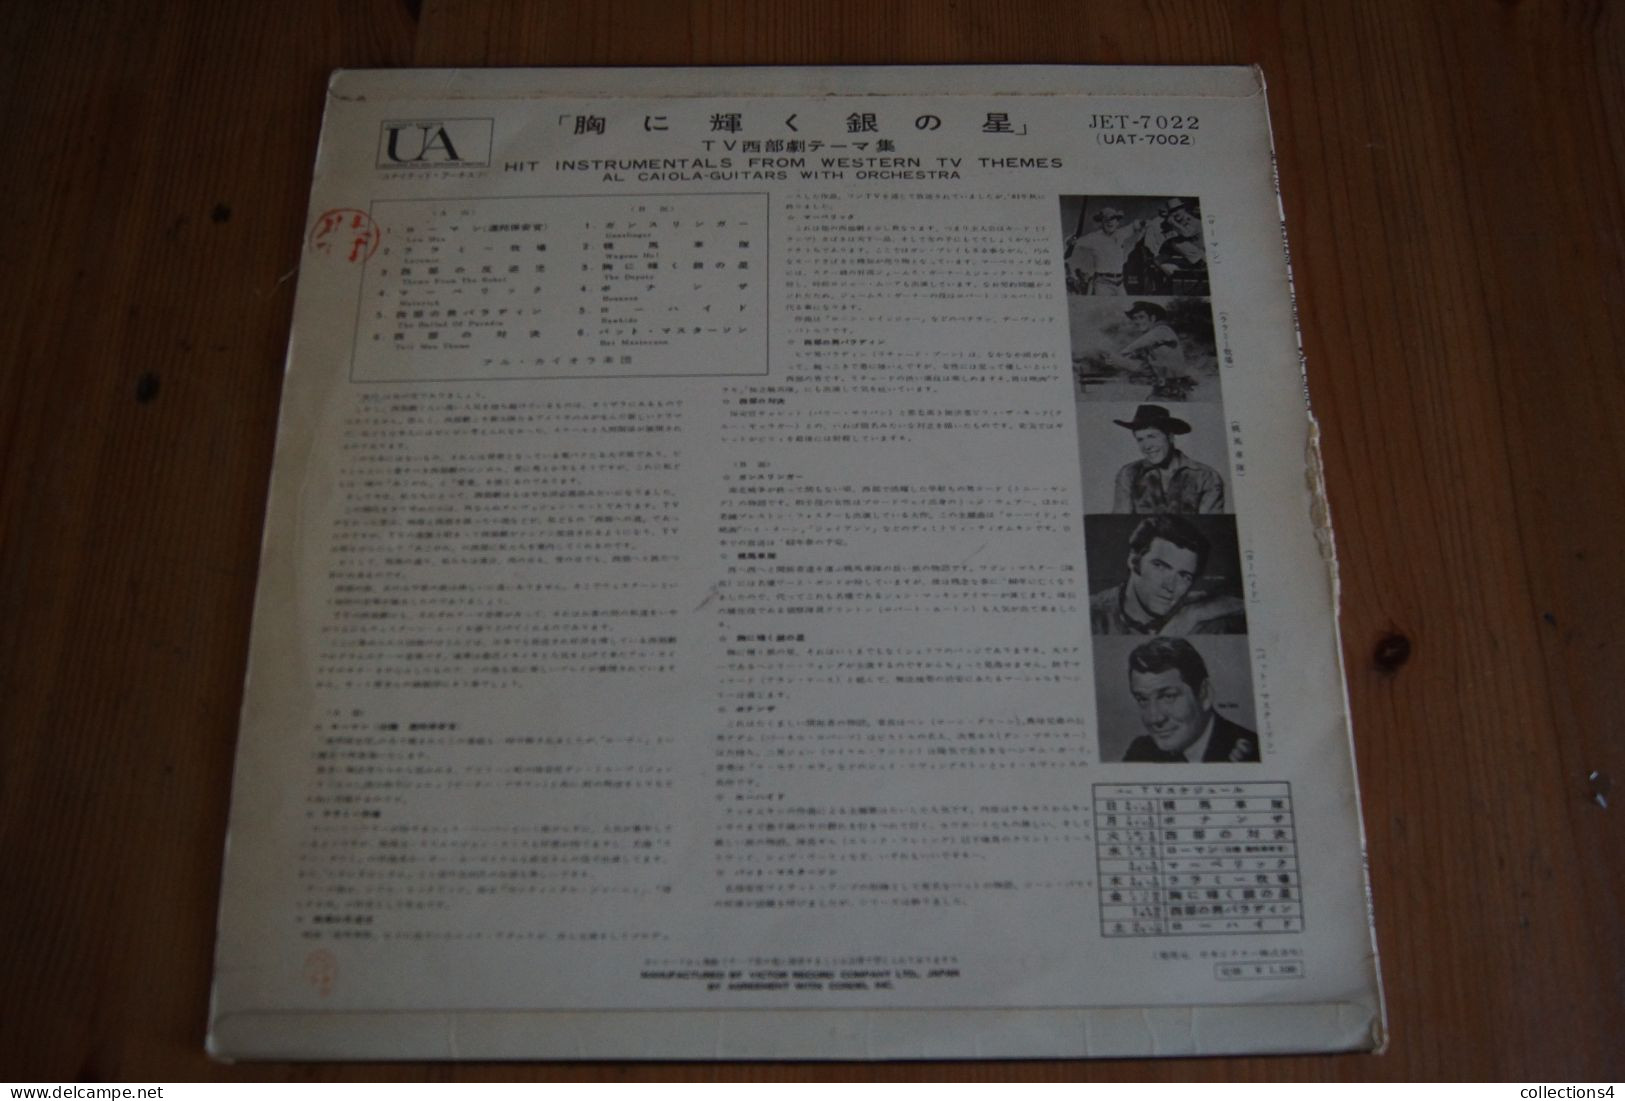 AL CAIOLA GUITARS WITH ORCHESTRA WESTERN TV THEMES    RARISSIME  LP JAPONAIS   19? - Musique De Films